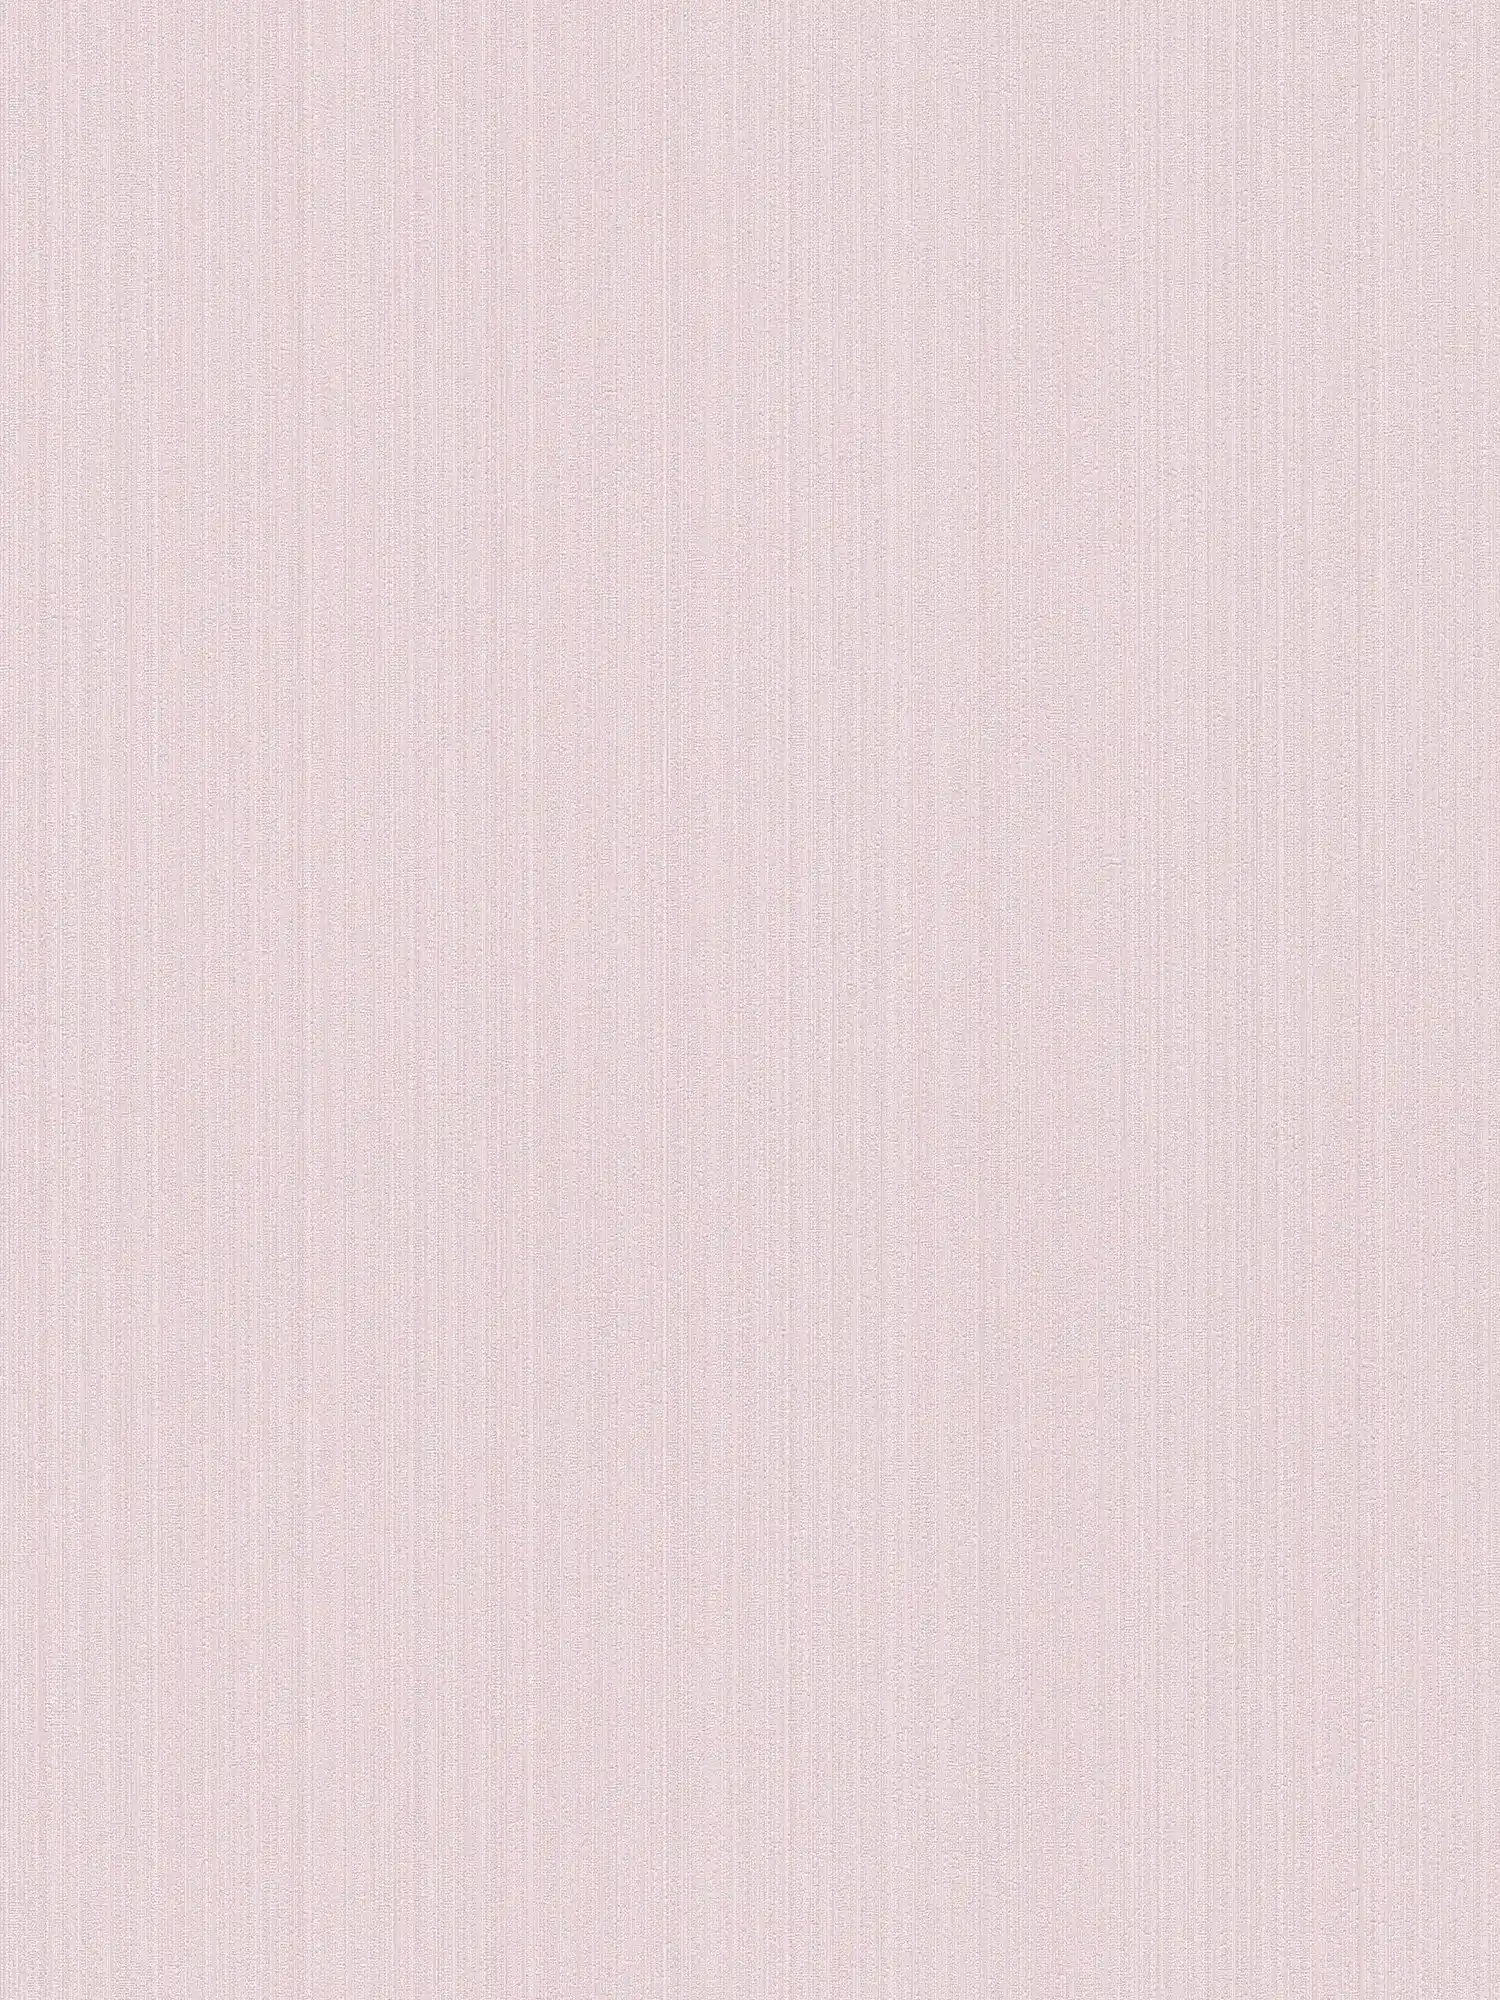 Carta da parati rosa in tessuto non tessuto di seta opaco, tinta unita con effetto struttura
